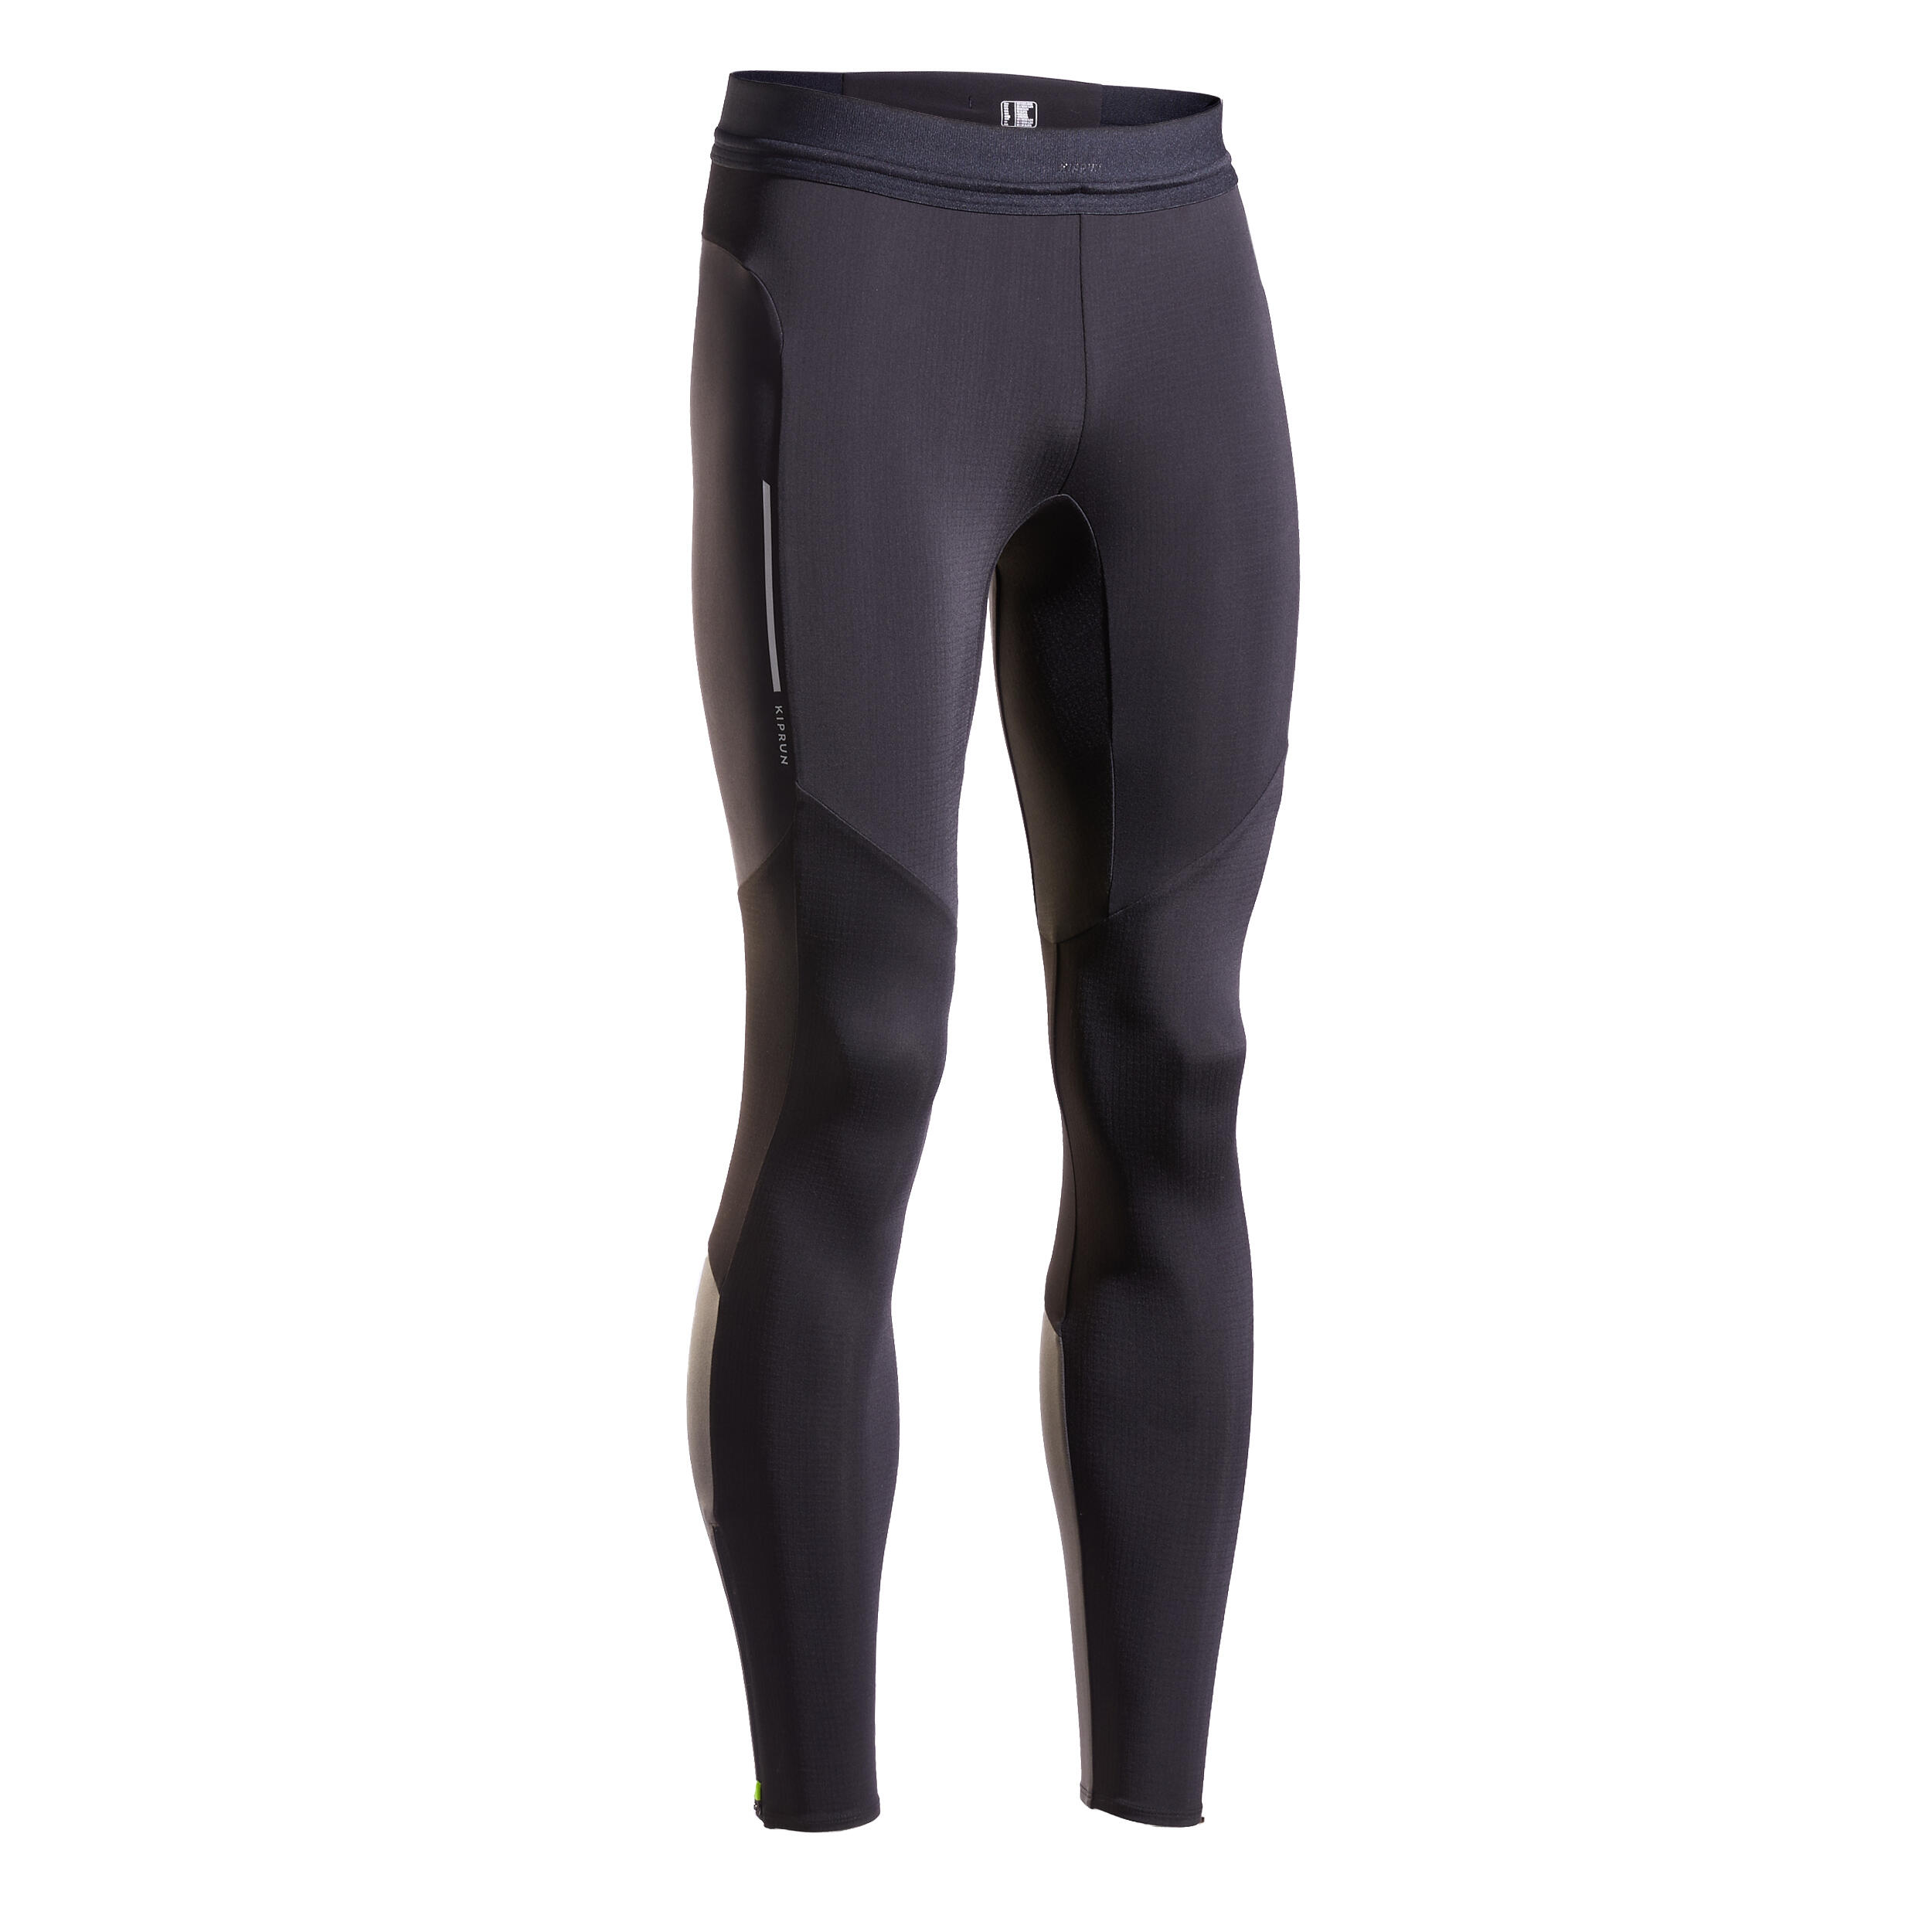 Men's Running Leggings - Warm Black/Grey - smoked black, Carbon grey ...